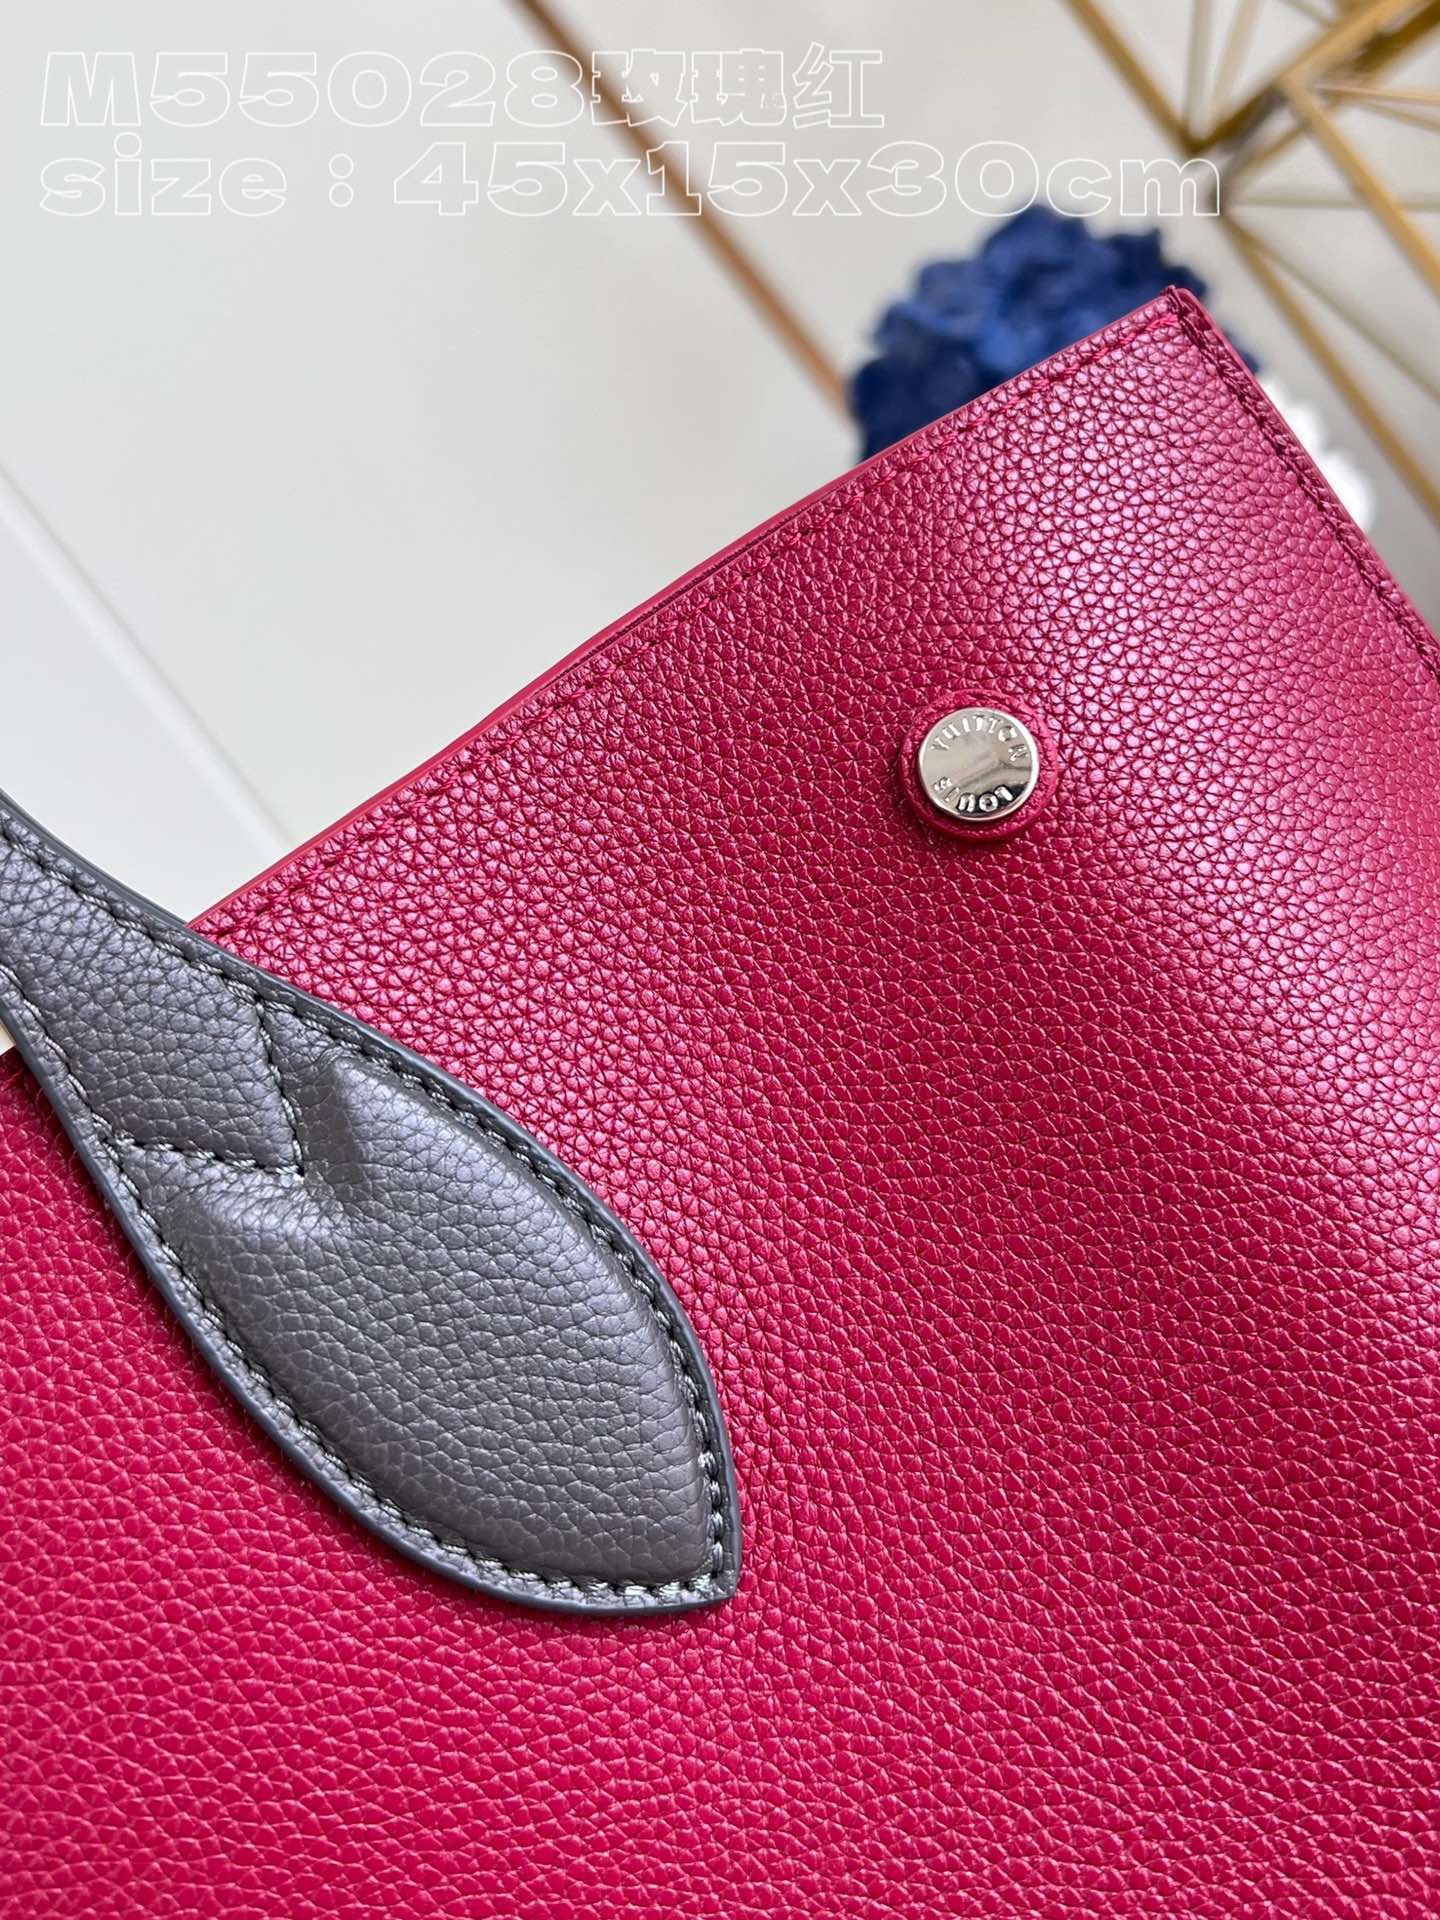 顶级原单M55028玫瑰红LOCKMEGO手袋这款包选用进口颗粒Taurillon小牛皮制做而成！其时尚